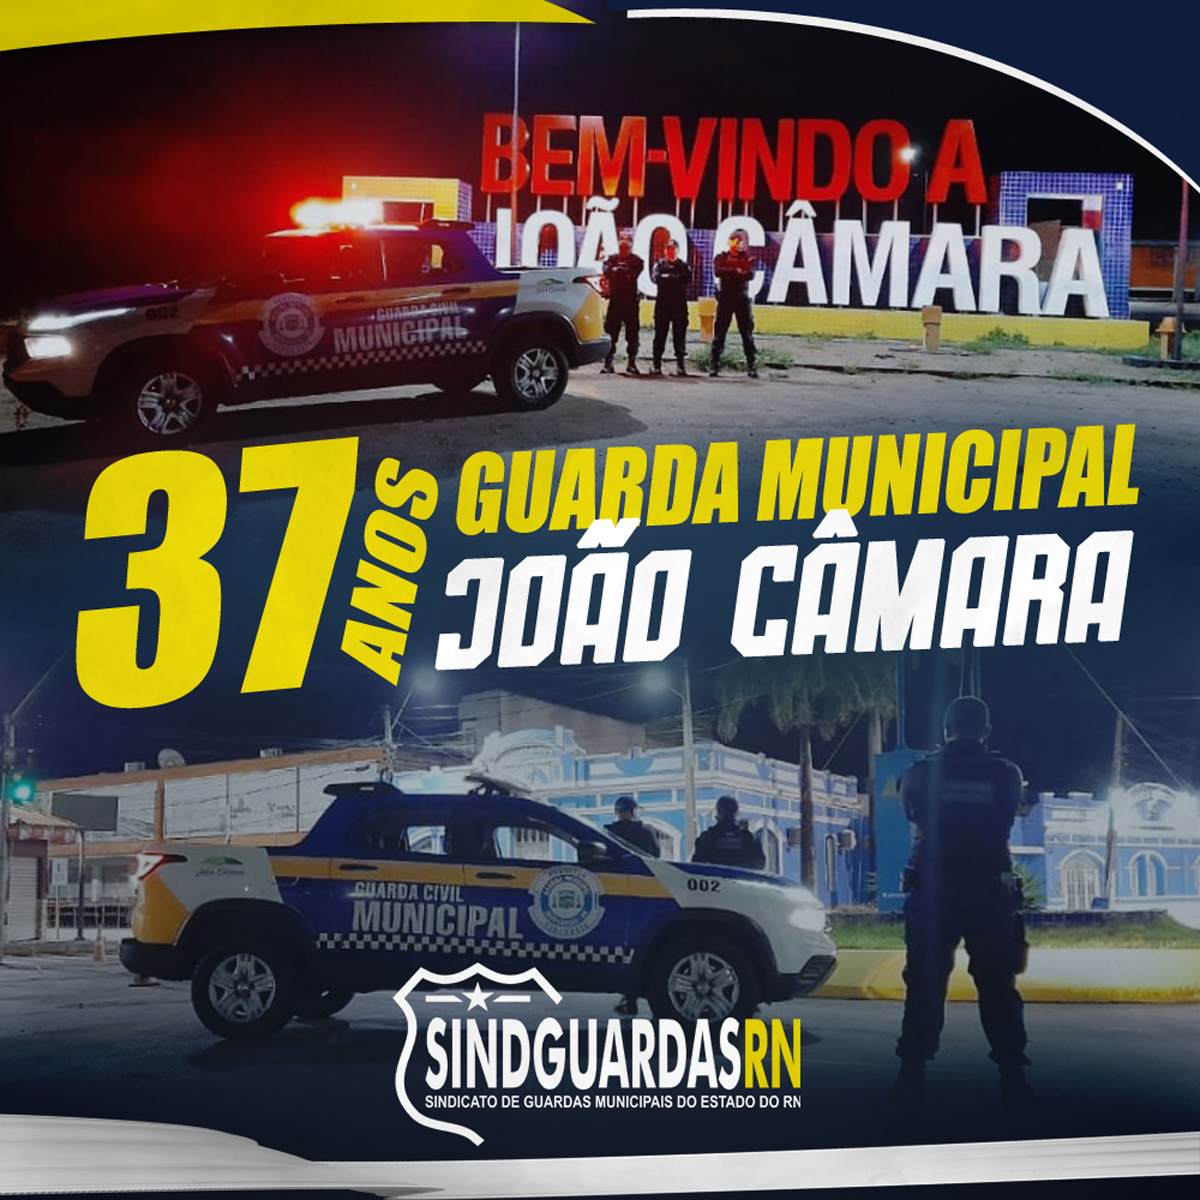 37 anos: Parabéns à Guarda Municipal de João Câmara